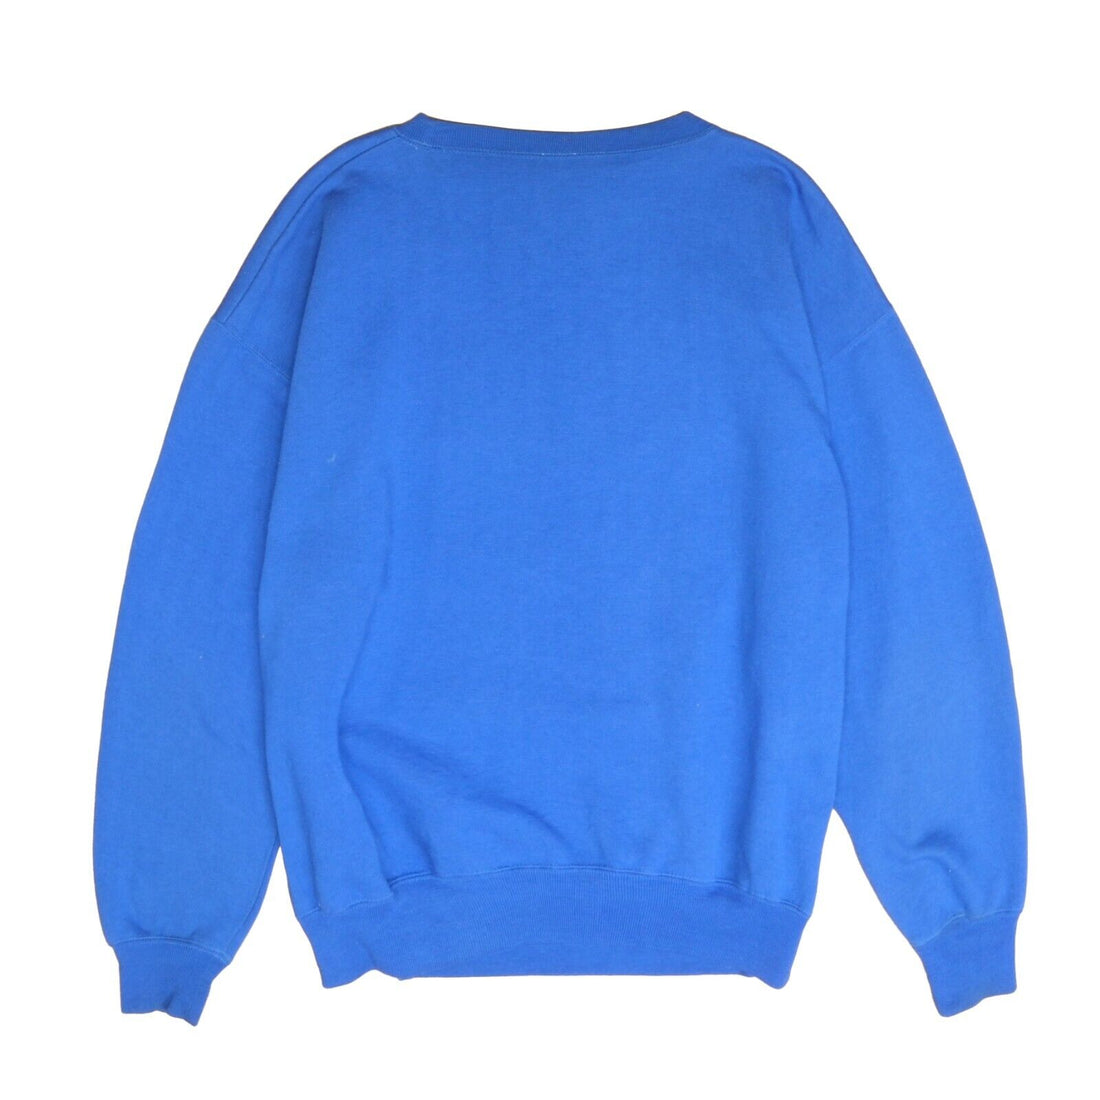 1993 Vintage Toronto BLUE JAYS Crewneck Sweater